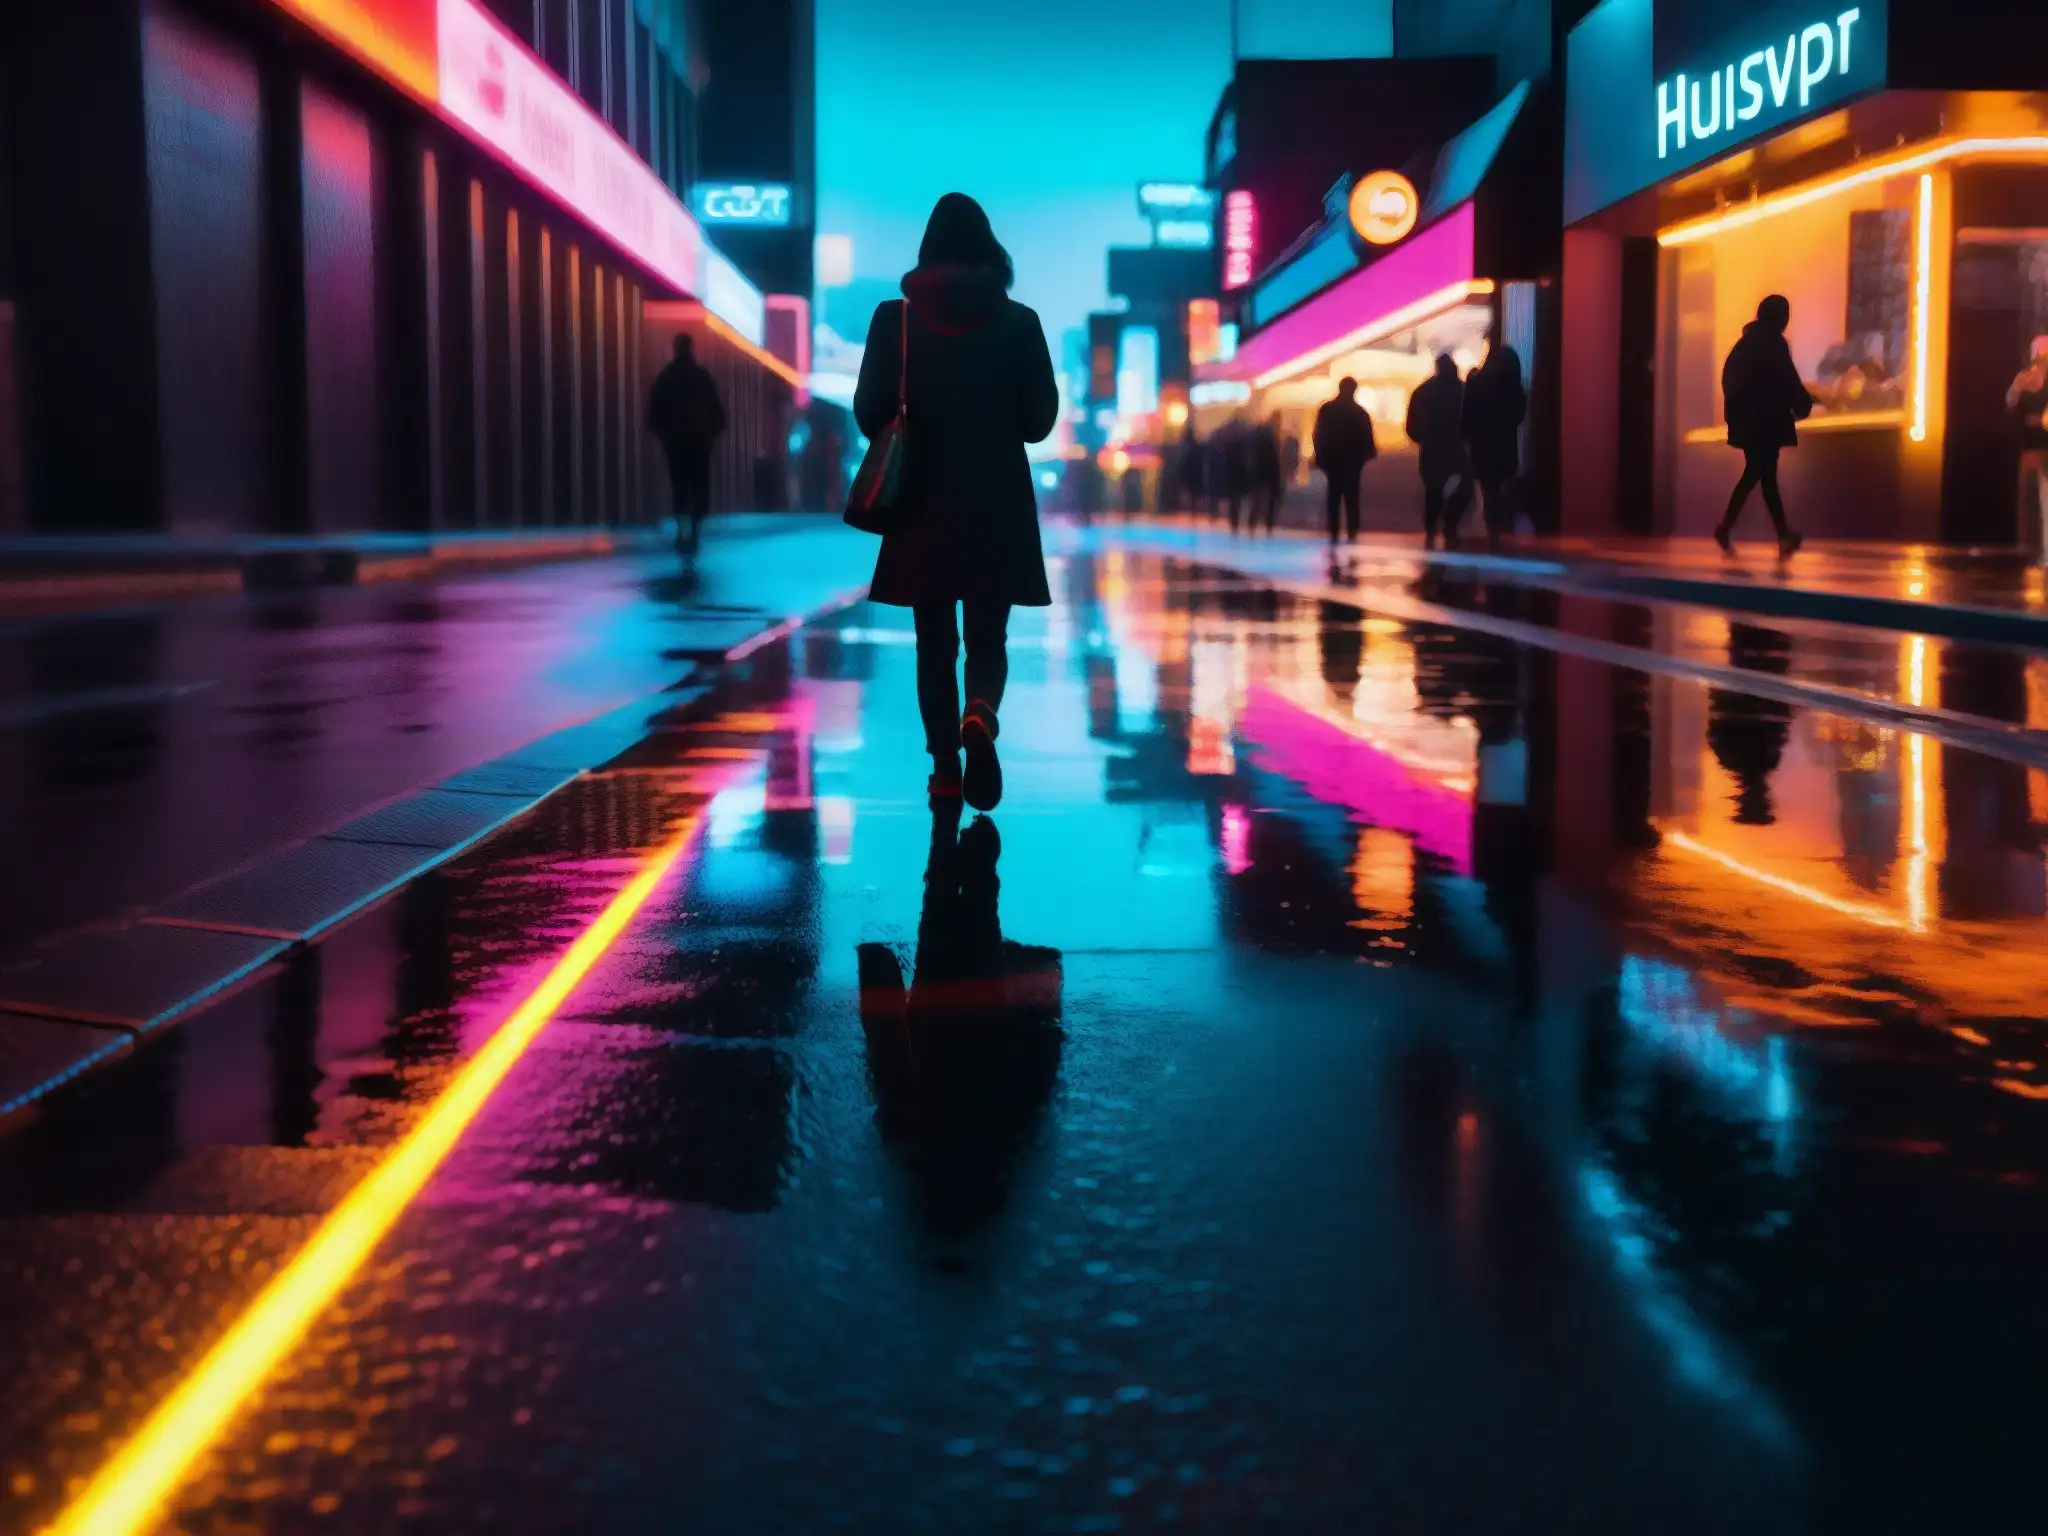 Persona solitaria camina absorvida en smartphone en calle nocturna, evocando leyendas urbanas dispositivos inteligentes